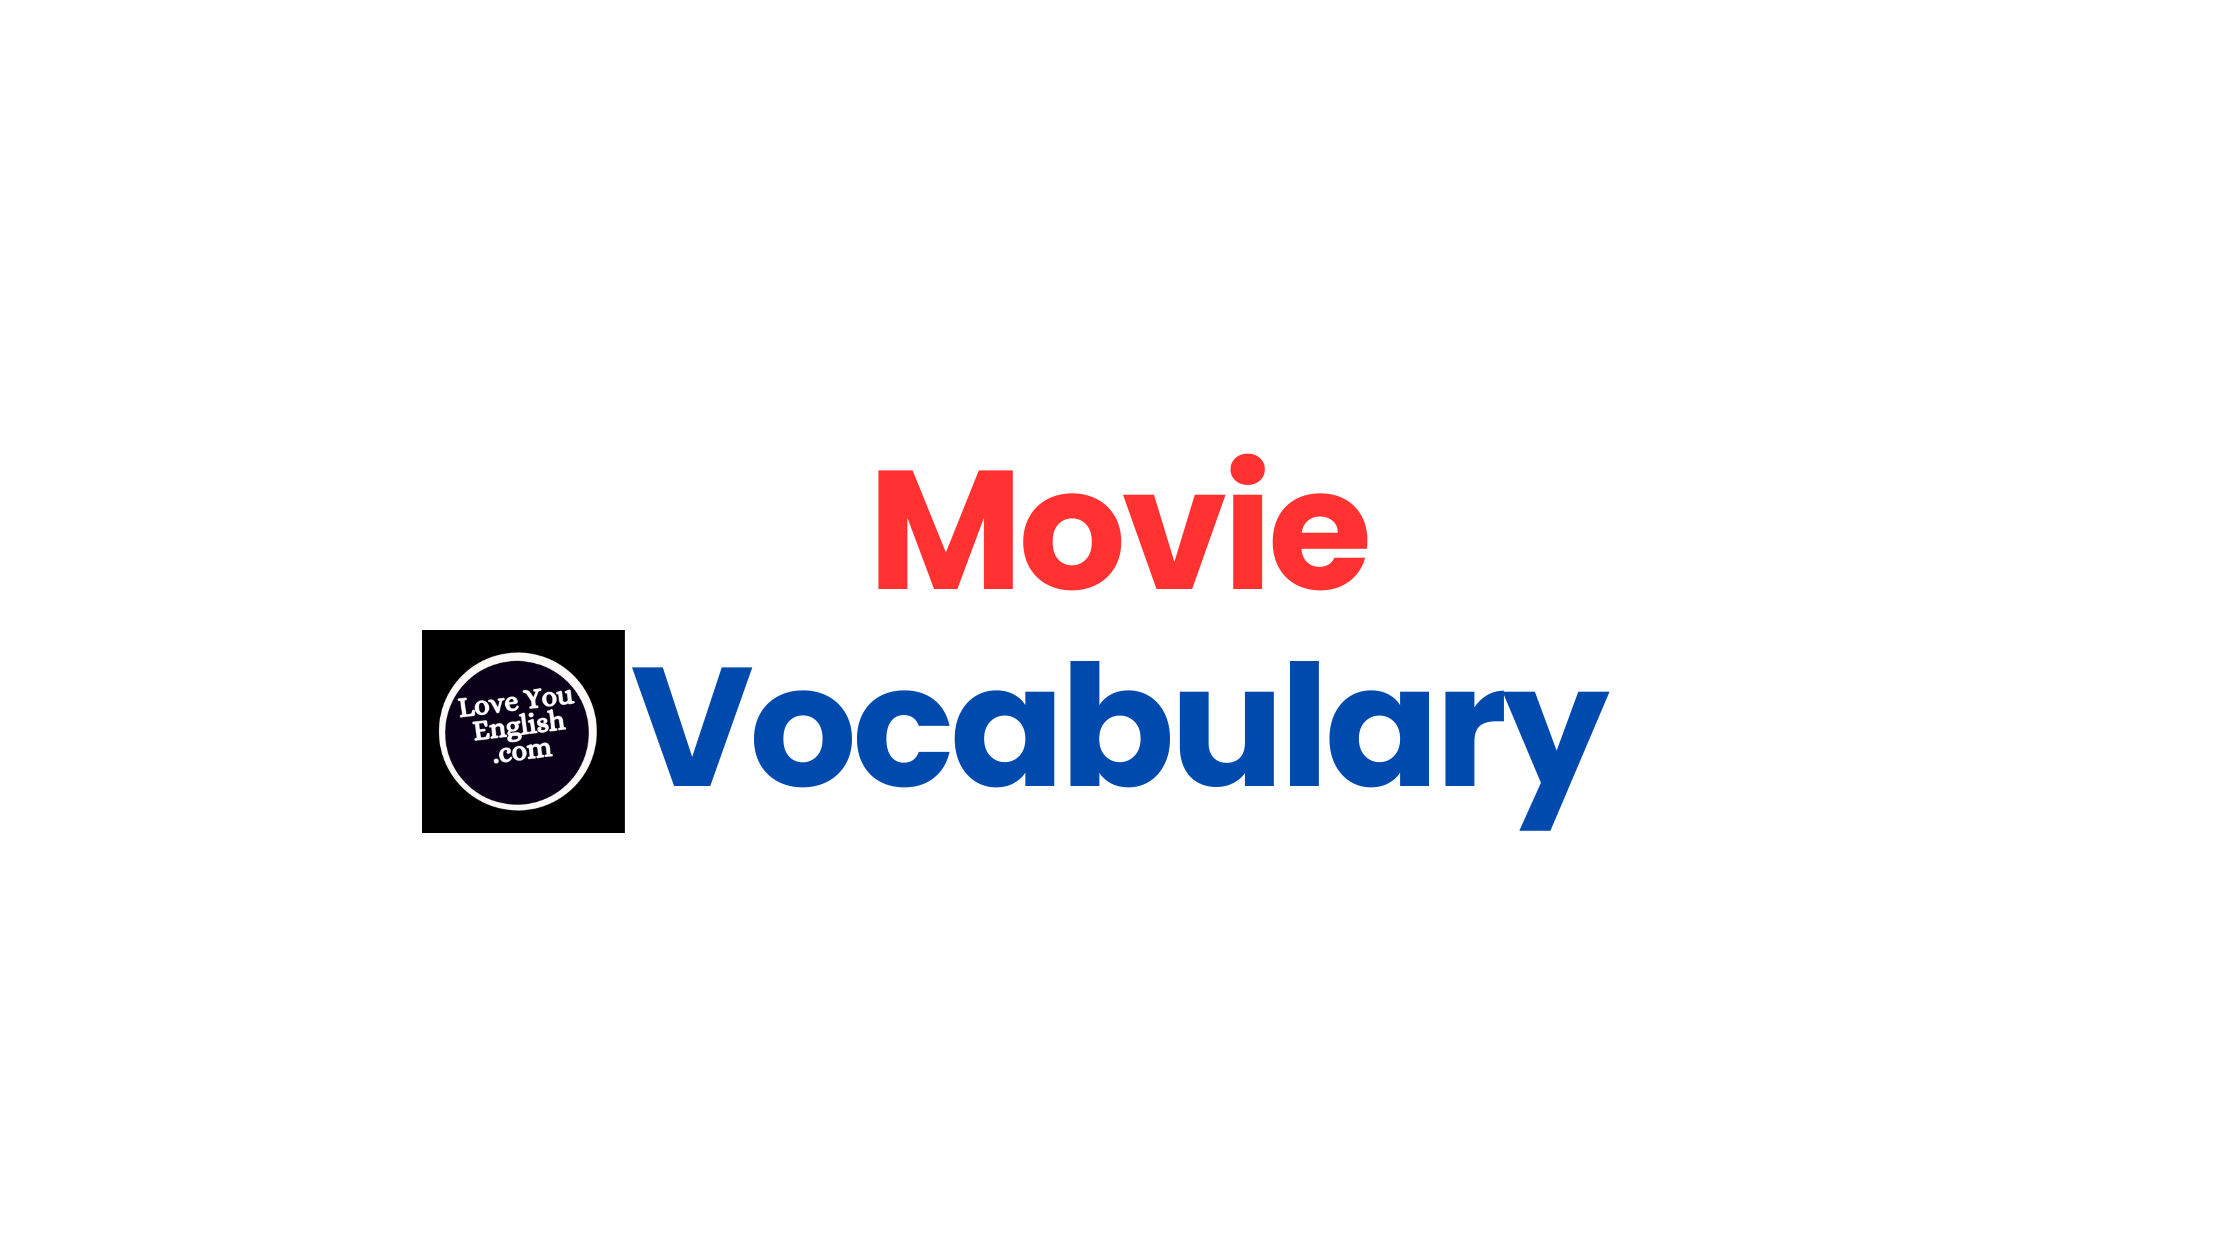 English movie vocabulary